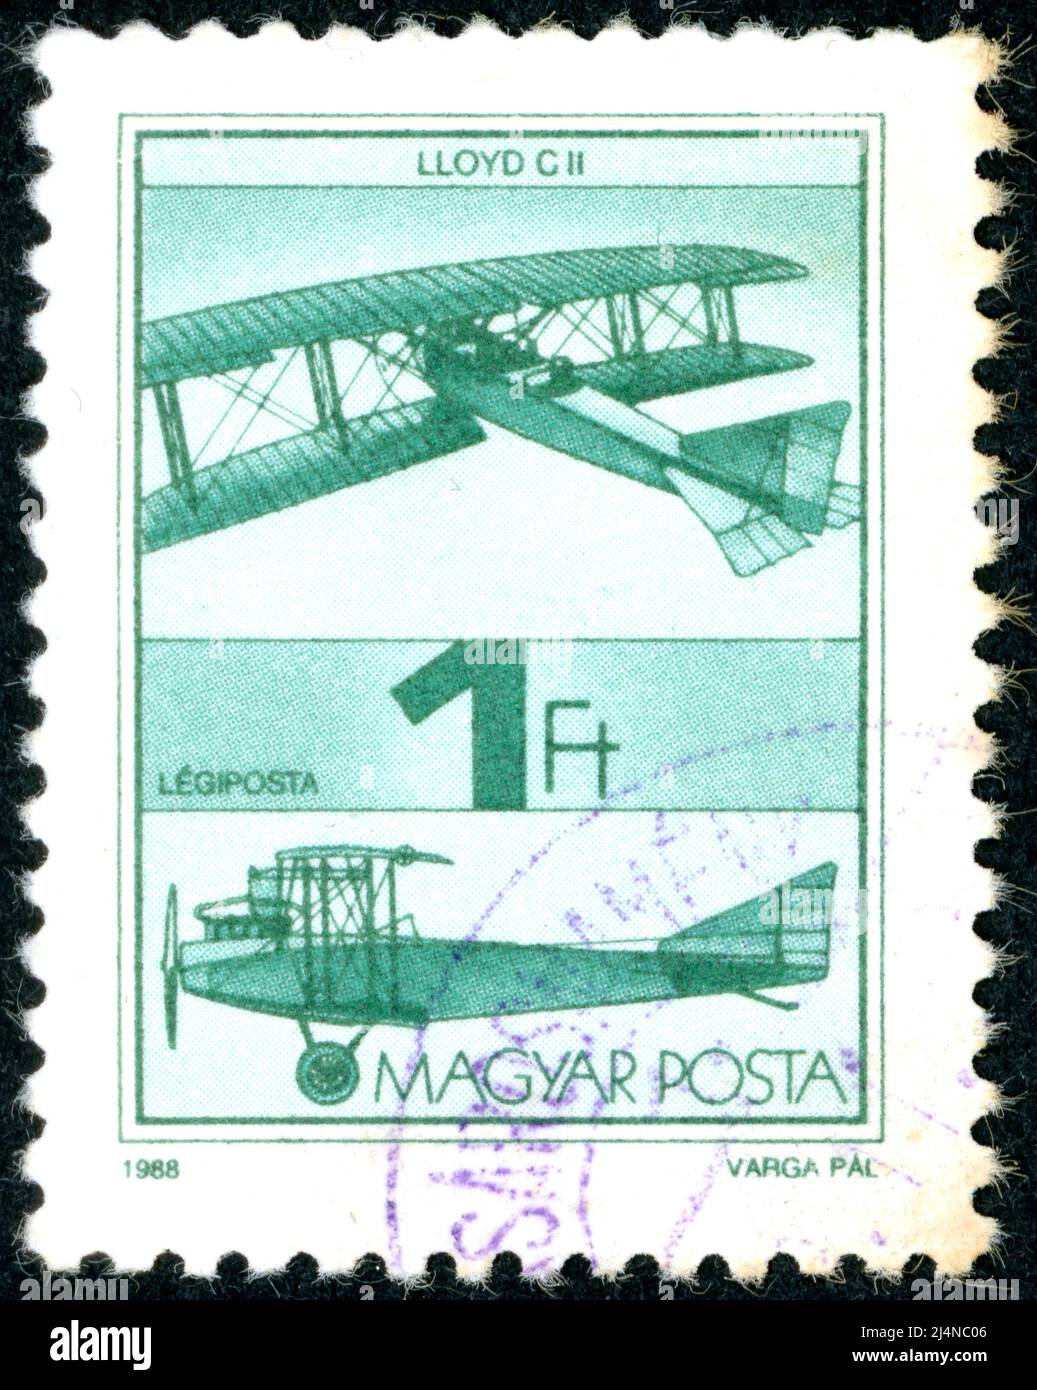 HONGRIE - VERS 1988 : timbre-poste imprimé en Hongrie, représentant l'avion de reconnaissance Lloyd C.II, vers 1988 Banque D'Images